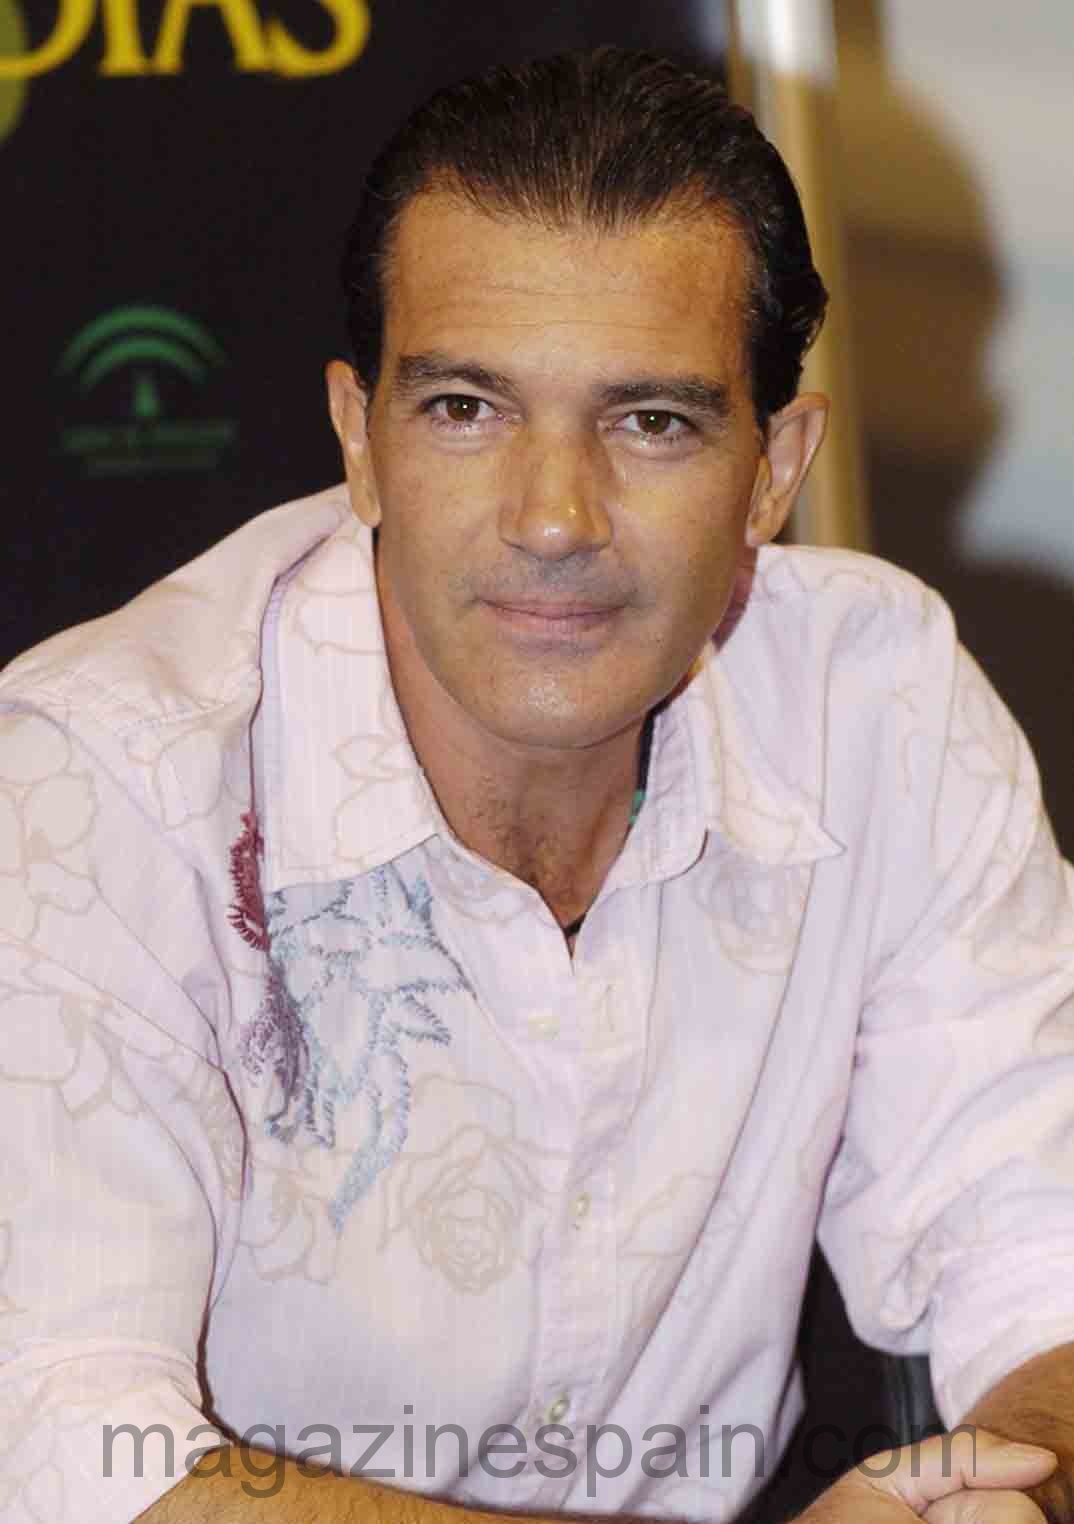 Antonio Banderas 2006-20151074 x 1524